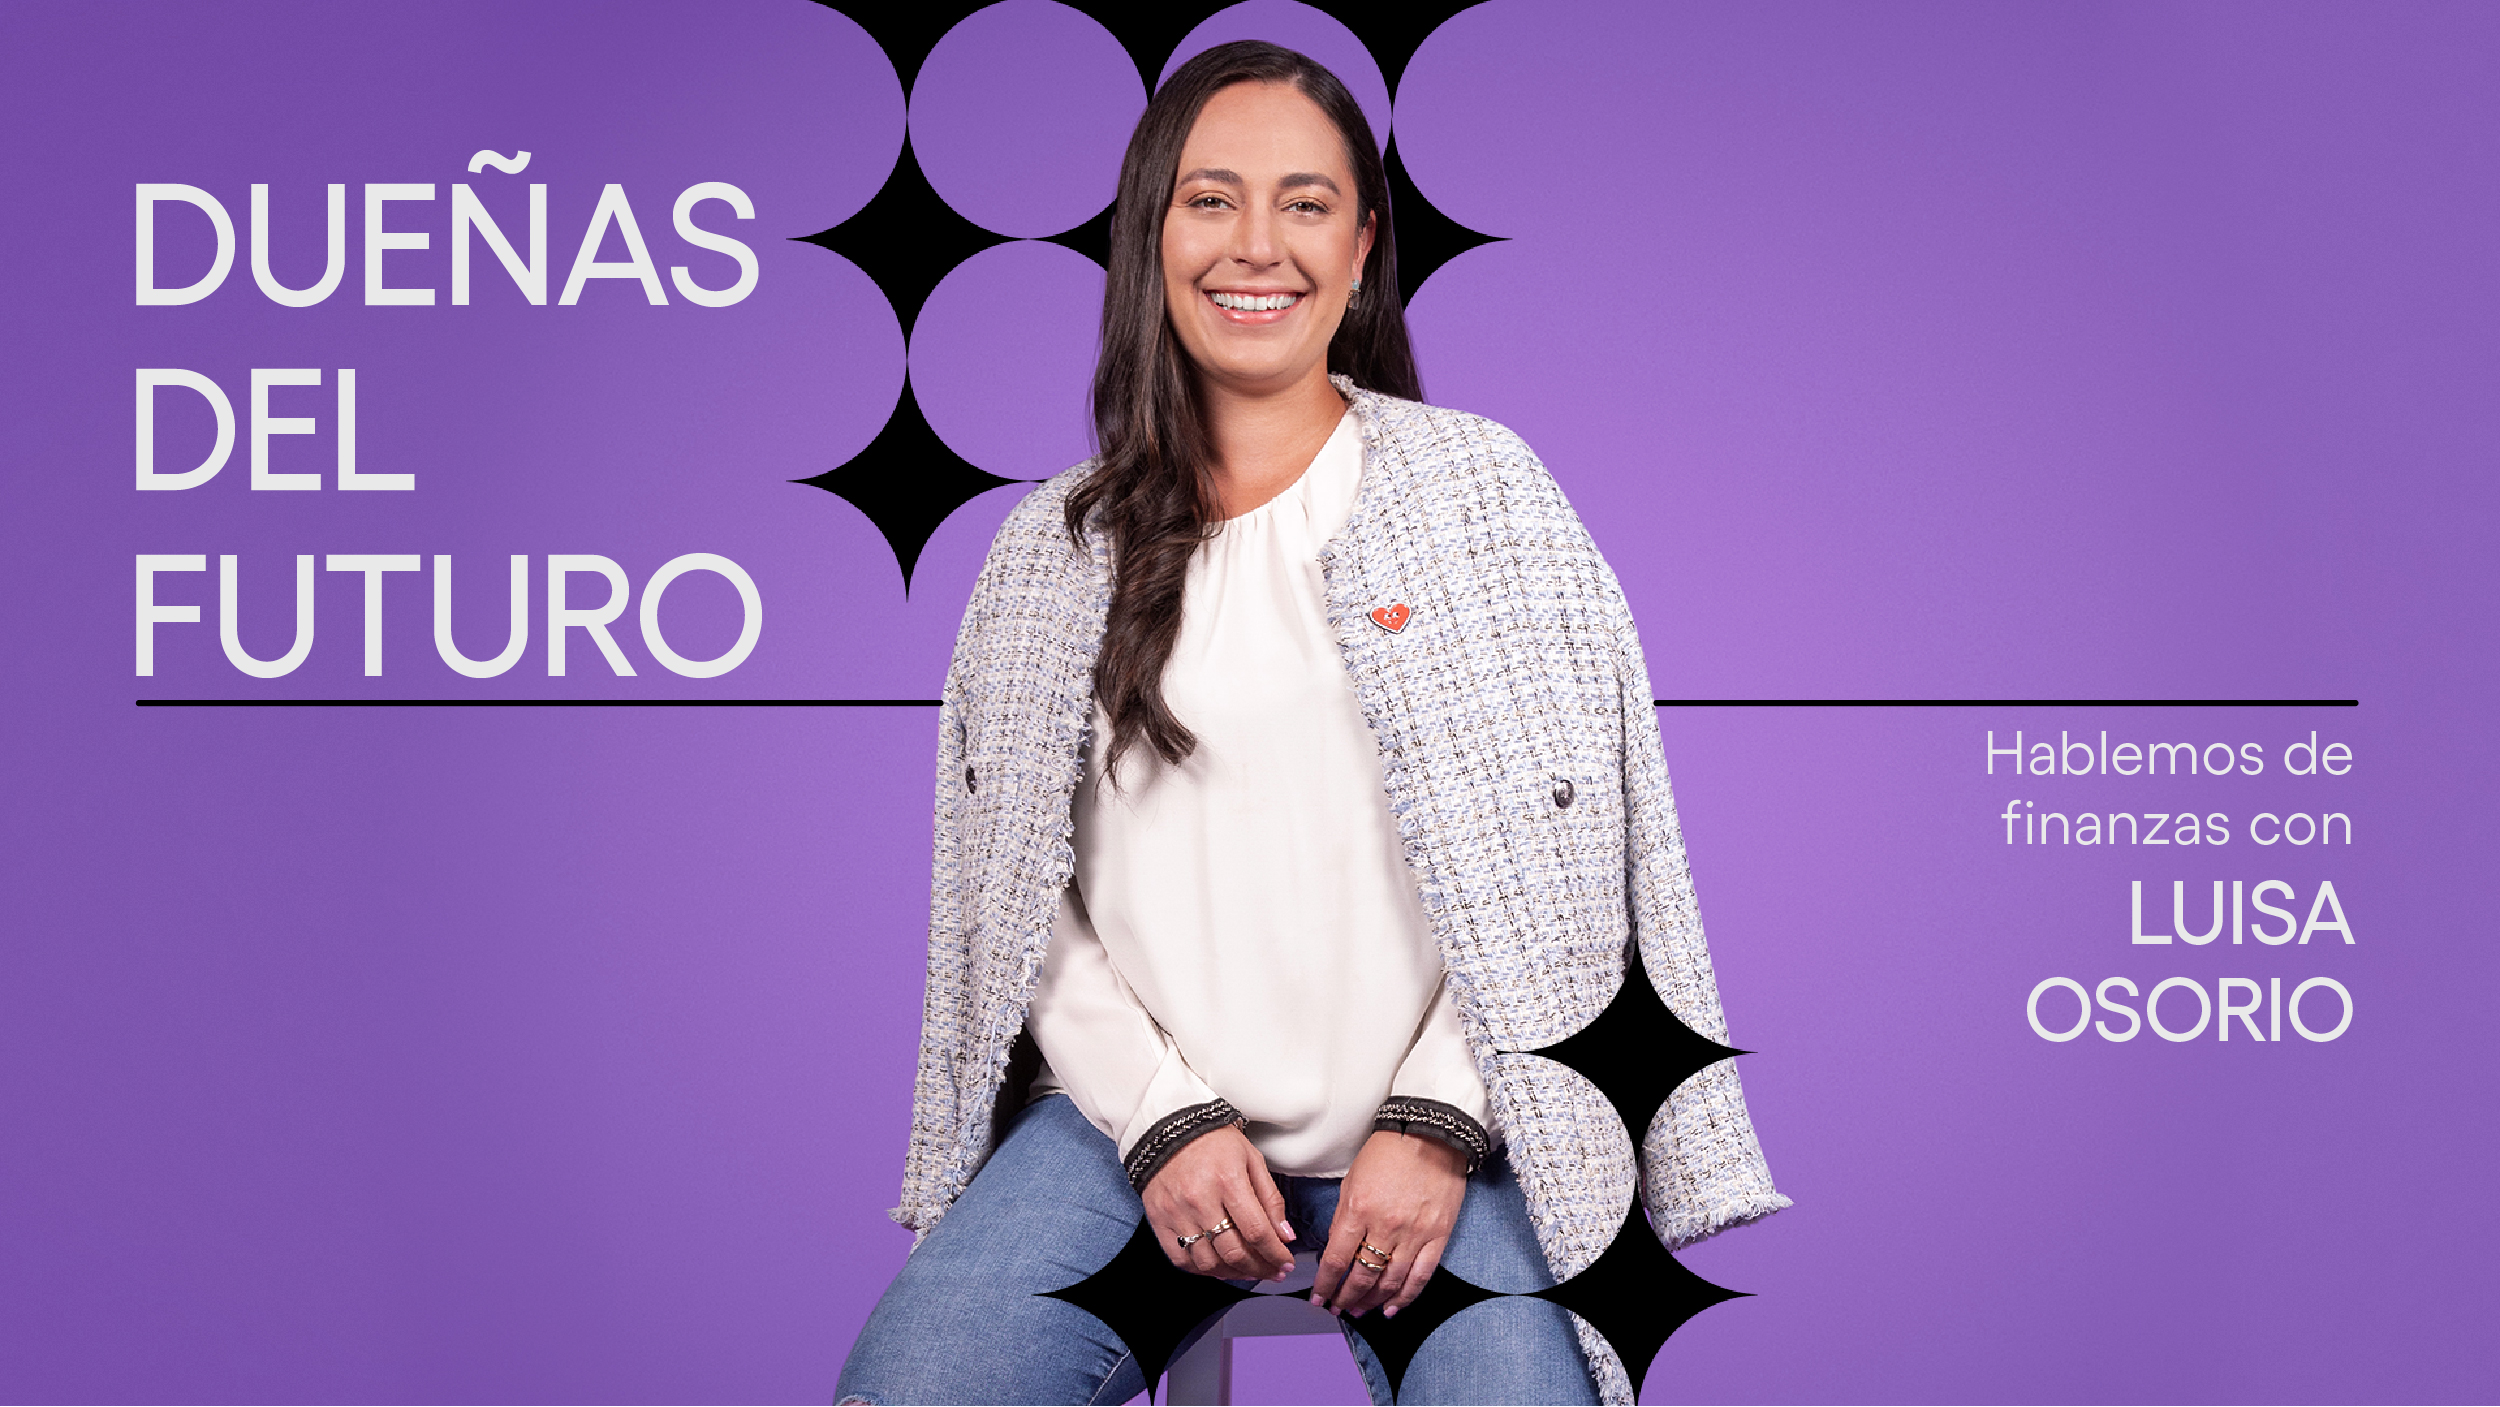 Luisa Osorio, Product Manager de Nu, posa sonriente. Dueñas del Futuro: perdiéndole el miedo a hablar de finanzas.